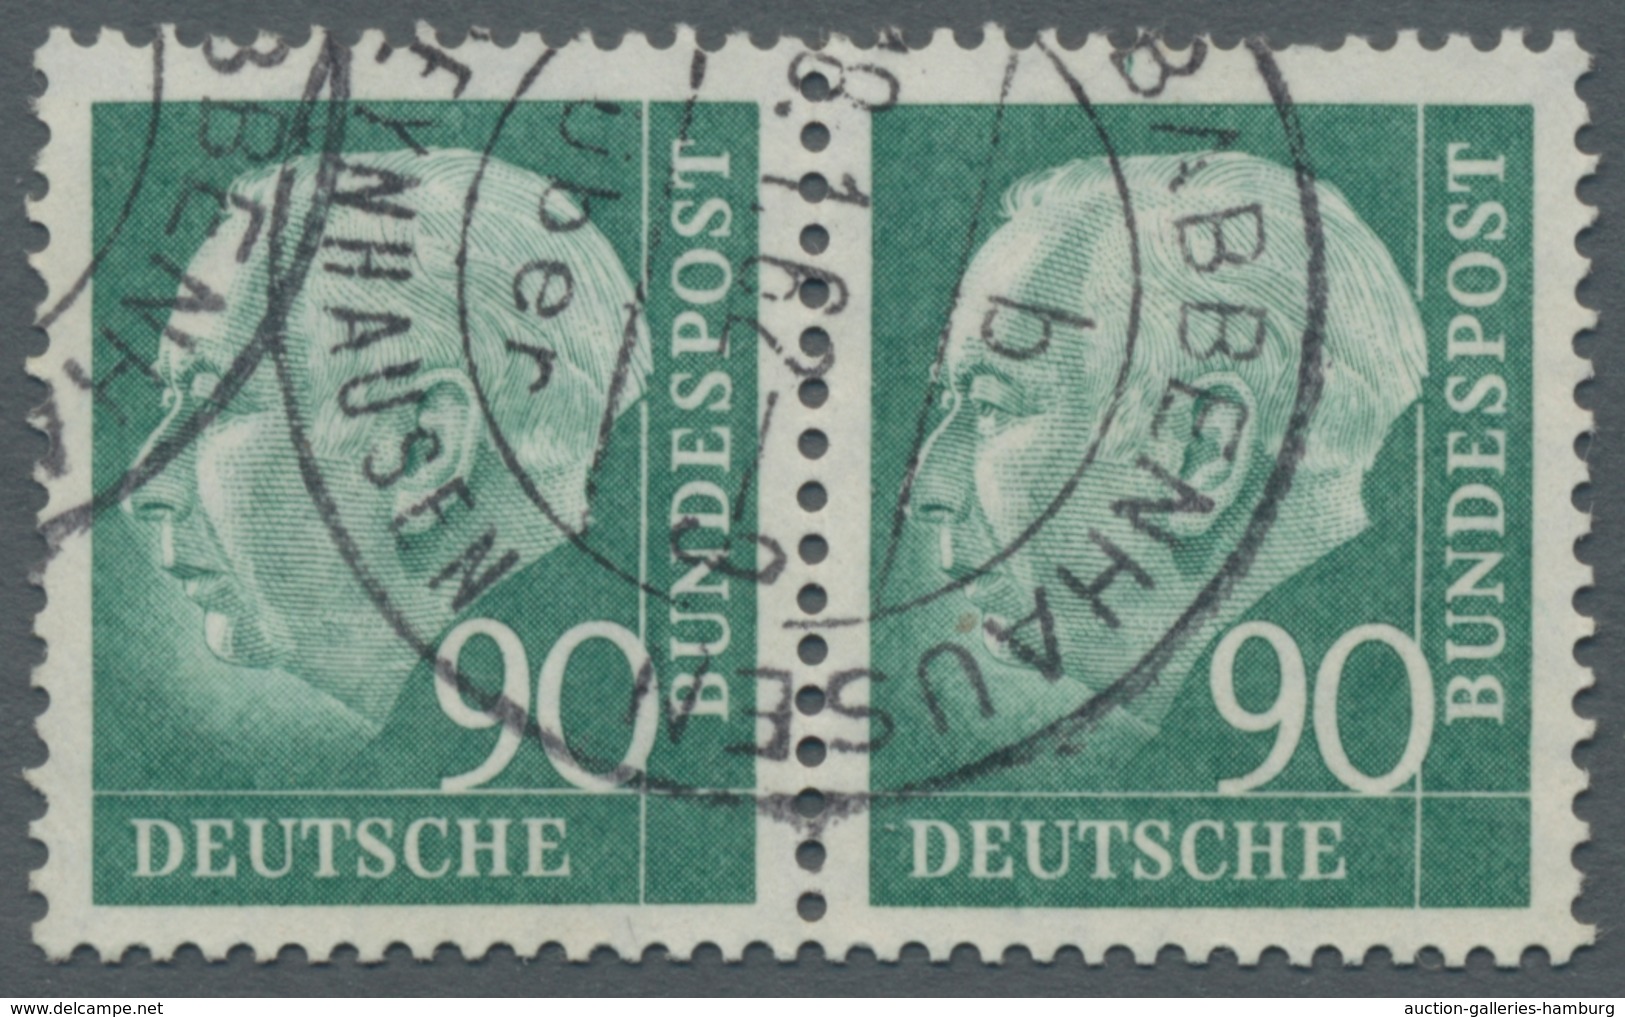 Bundesrepublik Deutschland: 1949-ca.1959 interessante Sammlung meist gestempelter gesuchter Abarten,